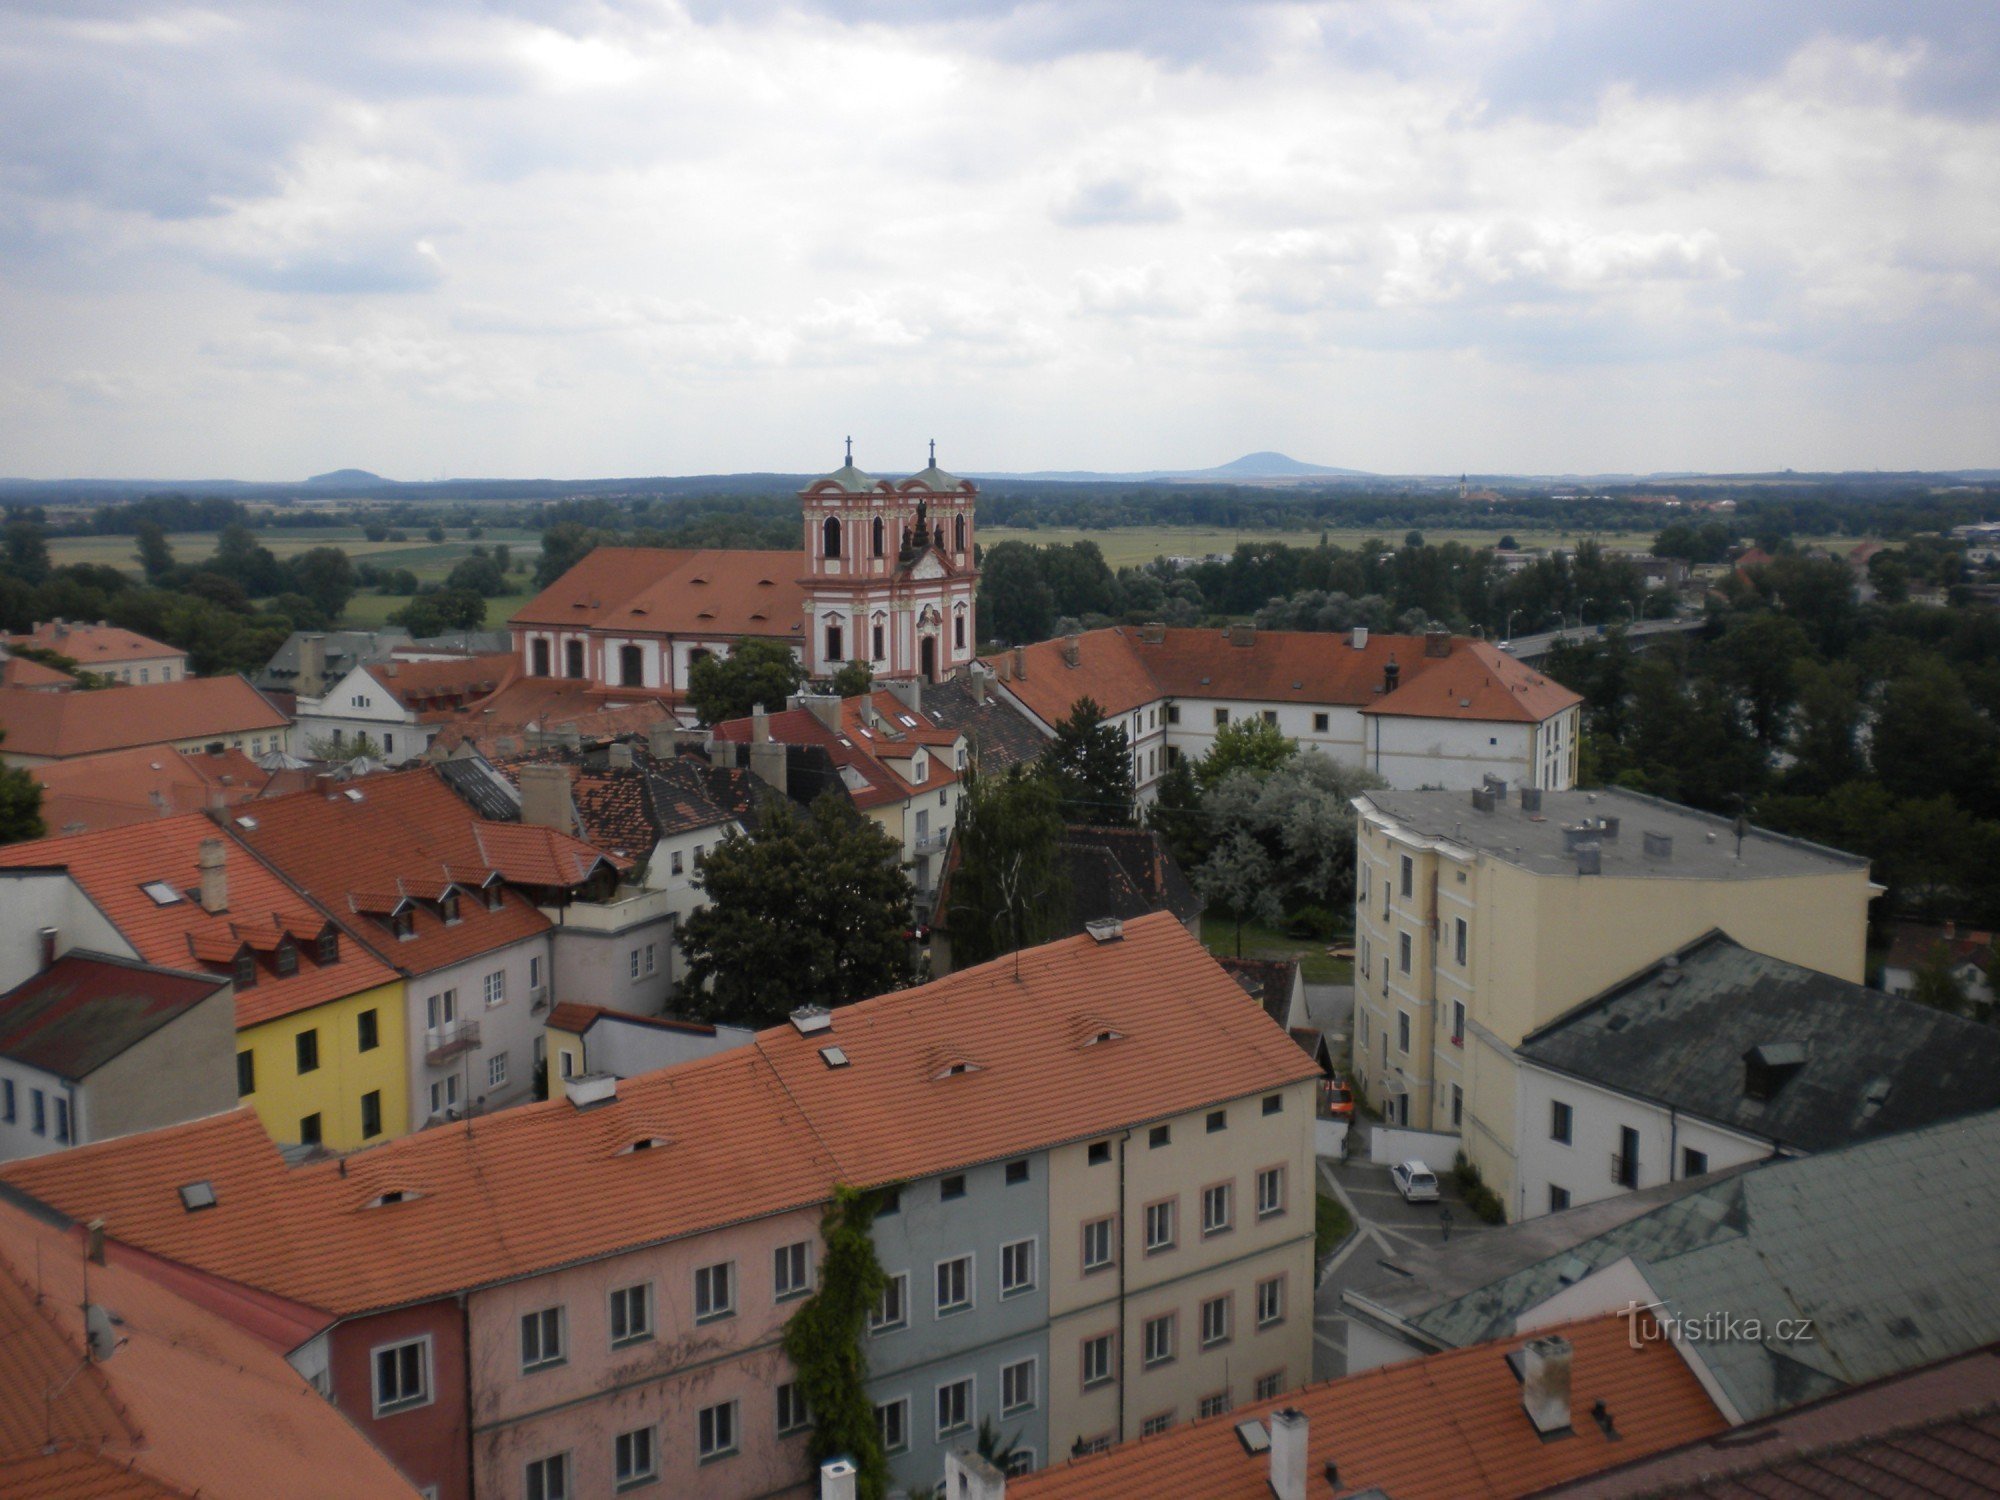 Historiske bygninger i byen Litoměřice.